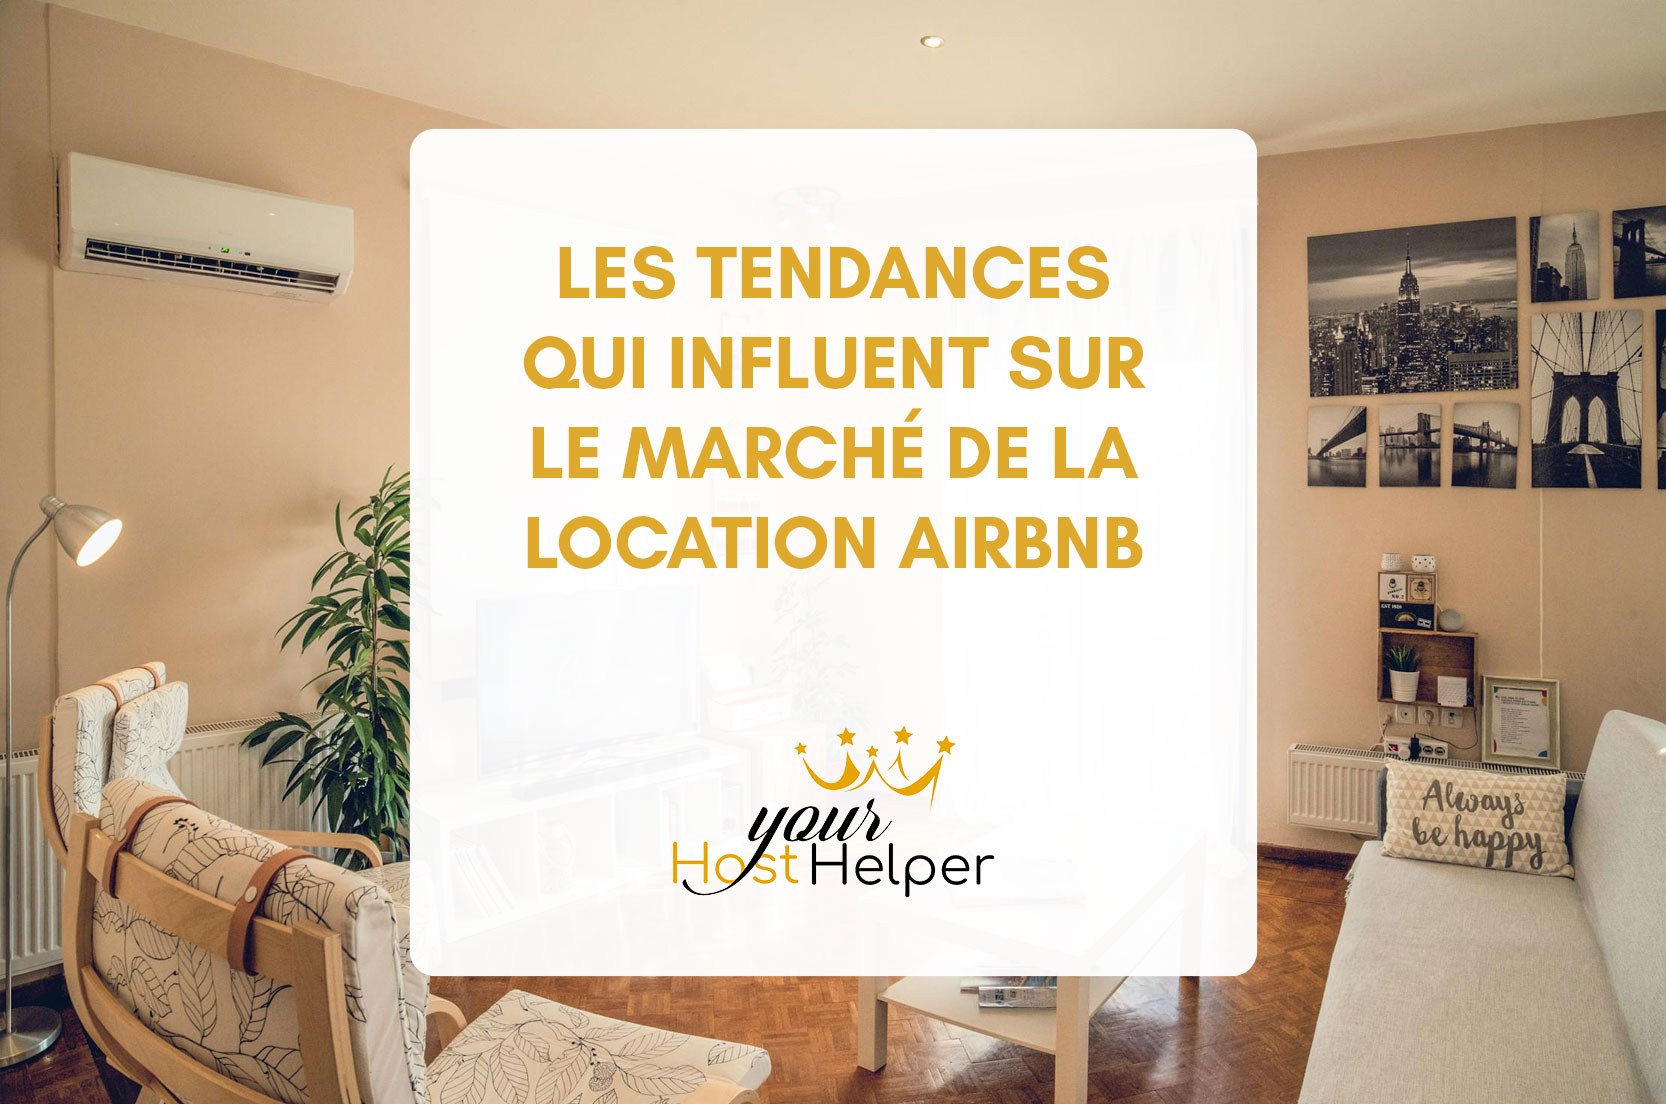 You are currently viewing Les tendances qui influent sur le marché de la location Airbnb